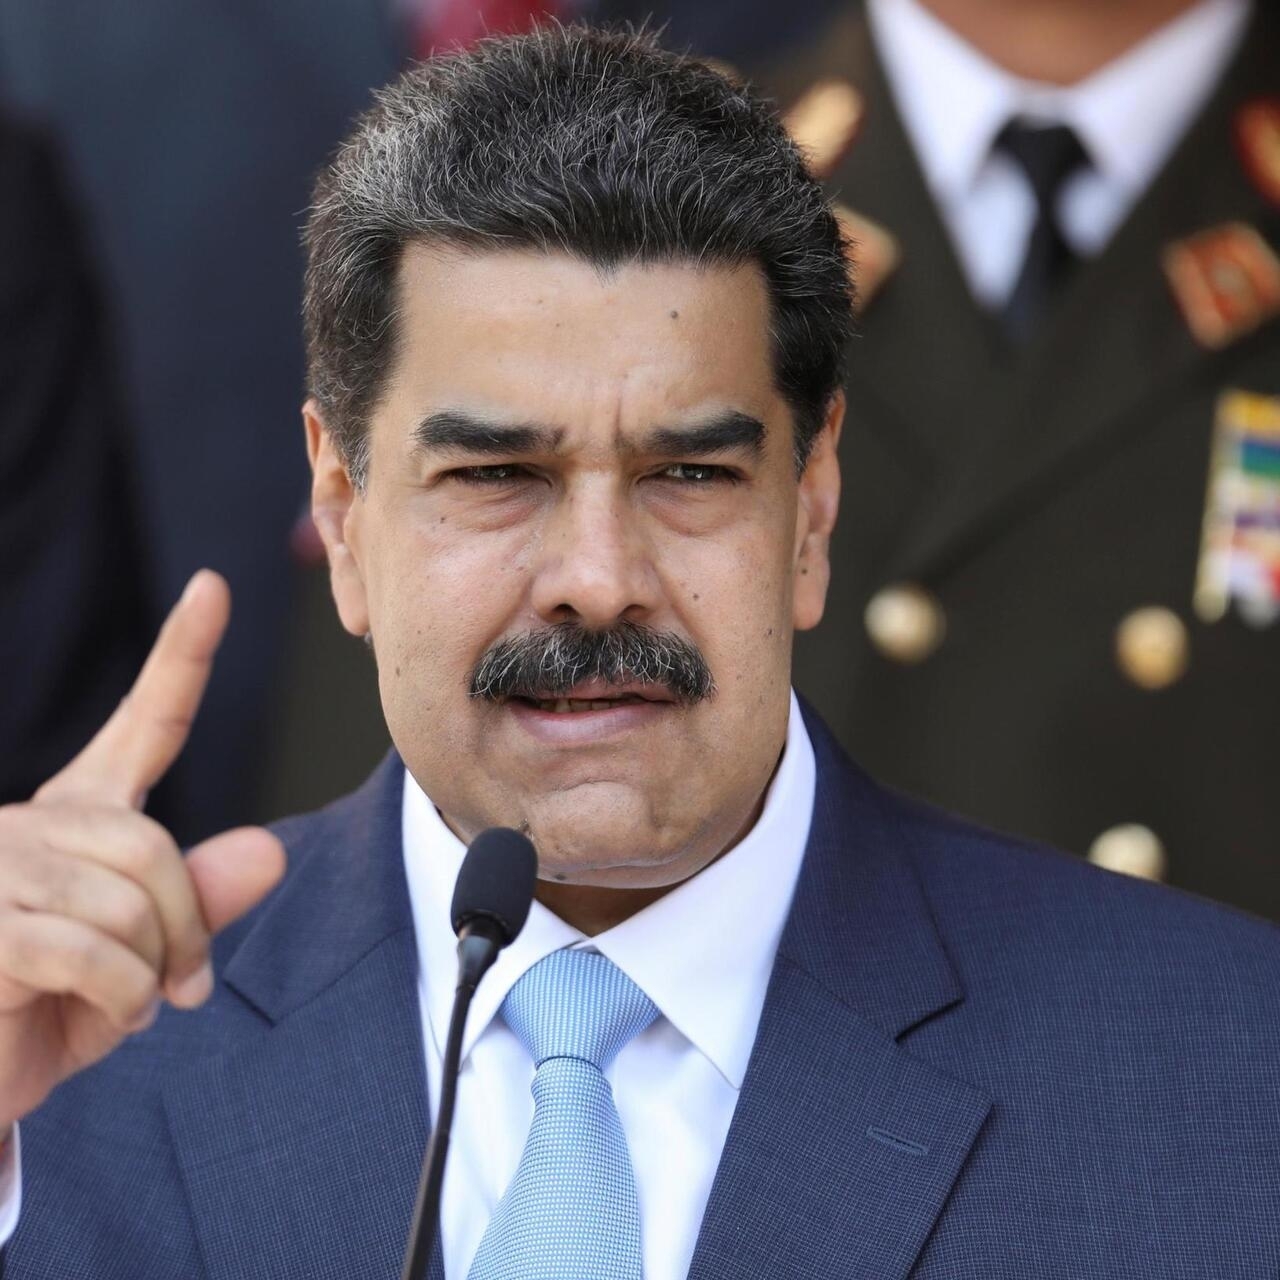 Le Venezuela «totalement prêt» à renouer avec les États-Unis